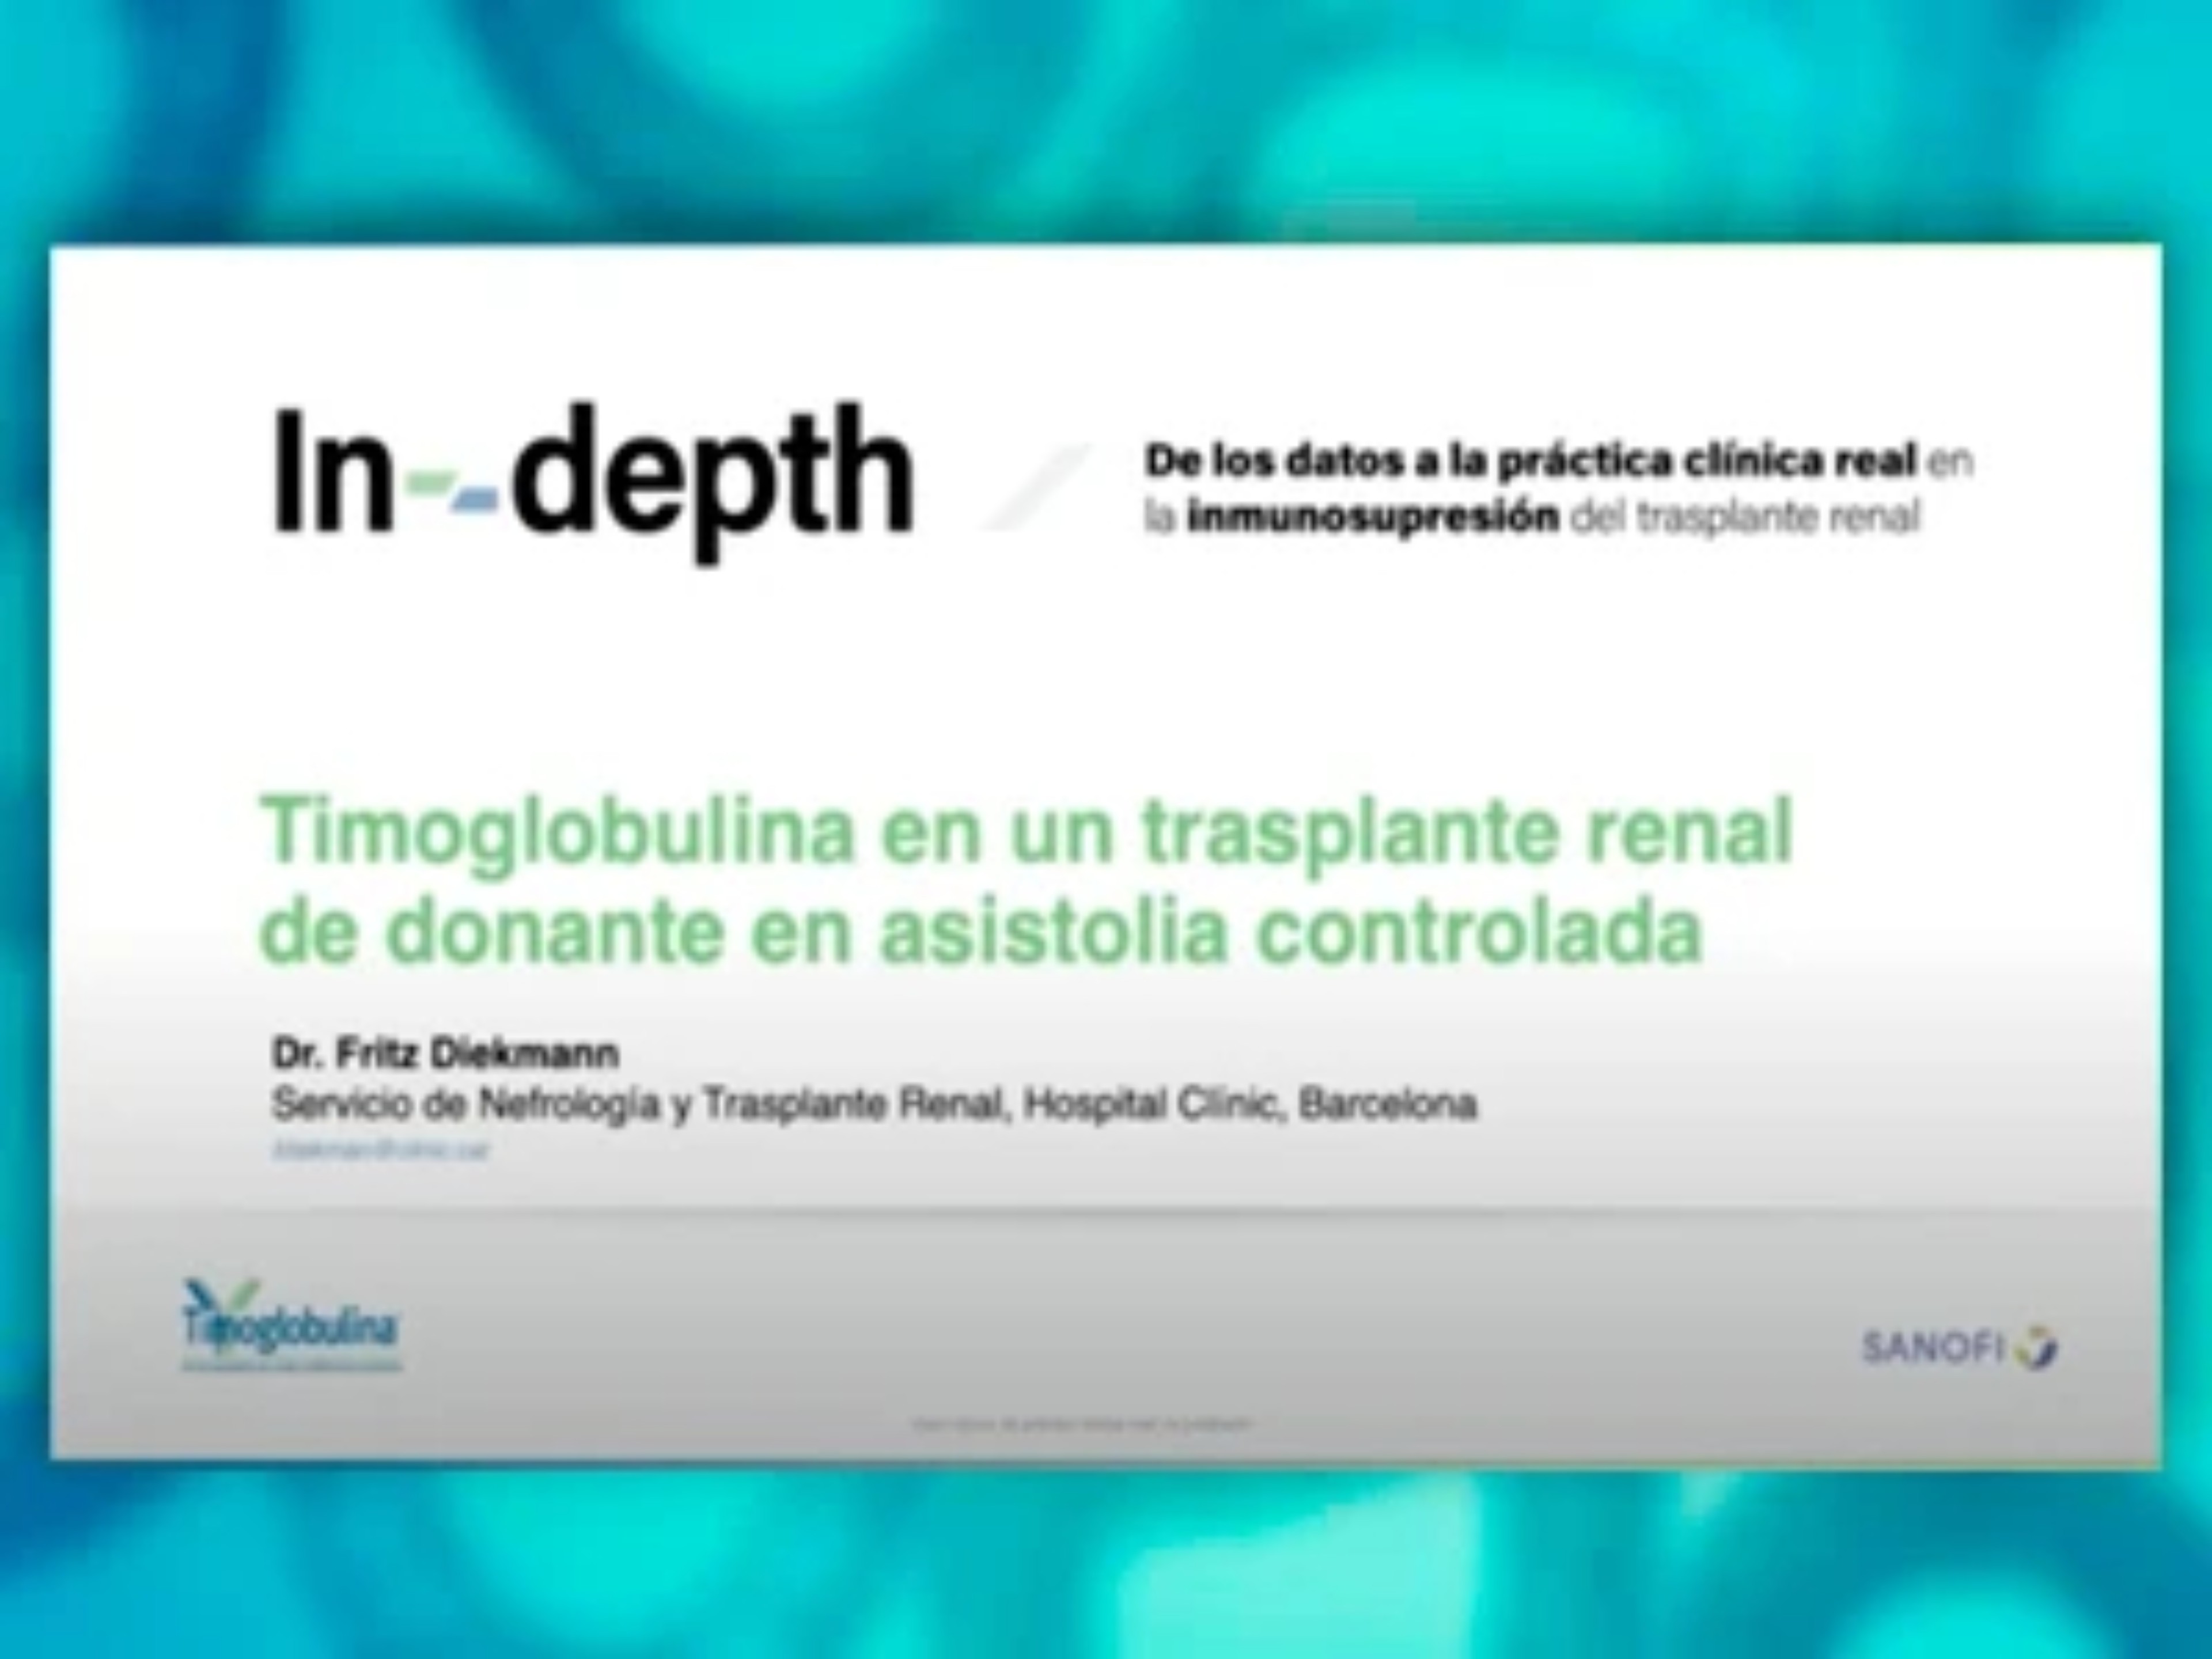 Timoglobulina en un trasplante renal de donante en asistolia controlada